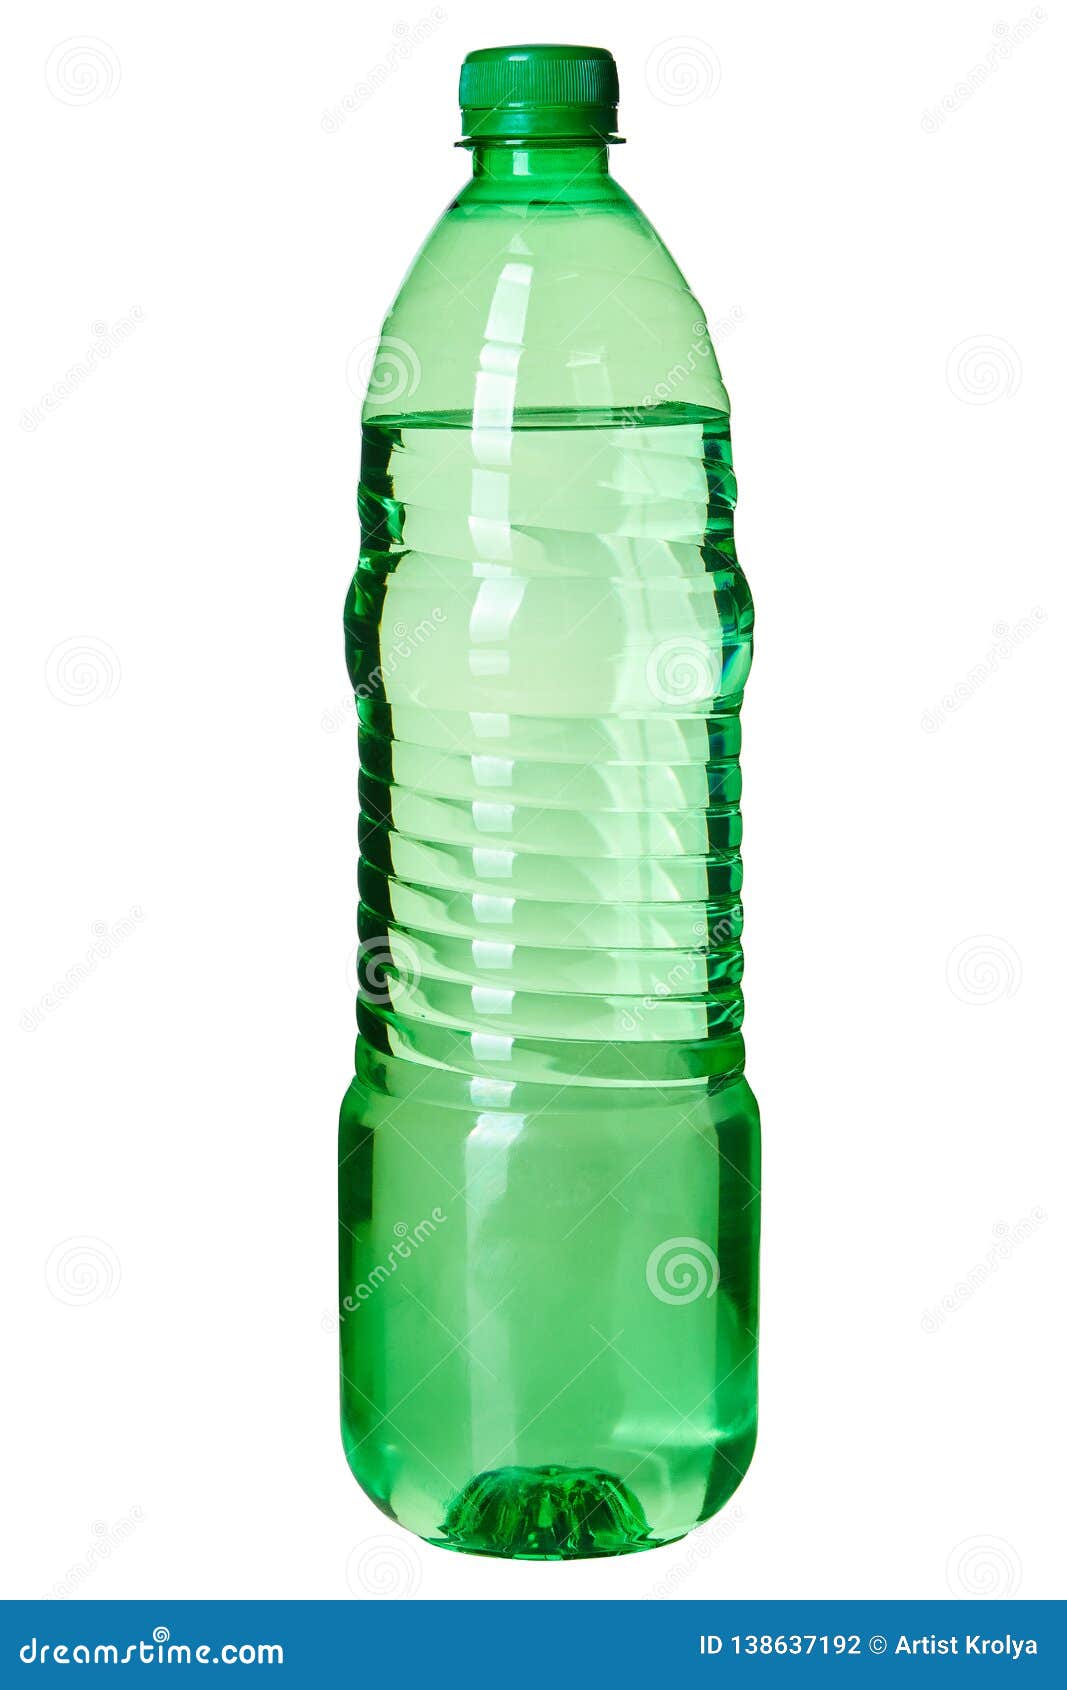 https://thumbs.dreamstime.com/z/mineral-puro-agua-potable-en-la-botella-del-animal-dom%C3%A9stico-de-litro-litros-verde-aislada-el-fondo-blanco-138637192.jpg